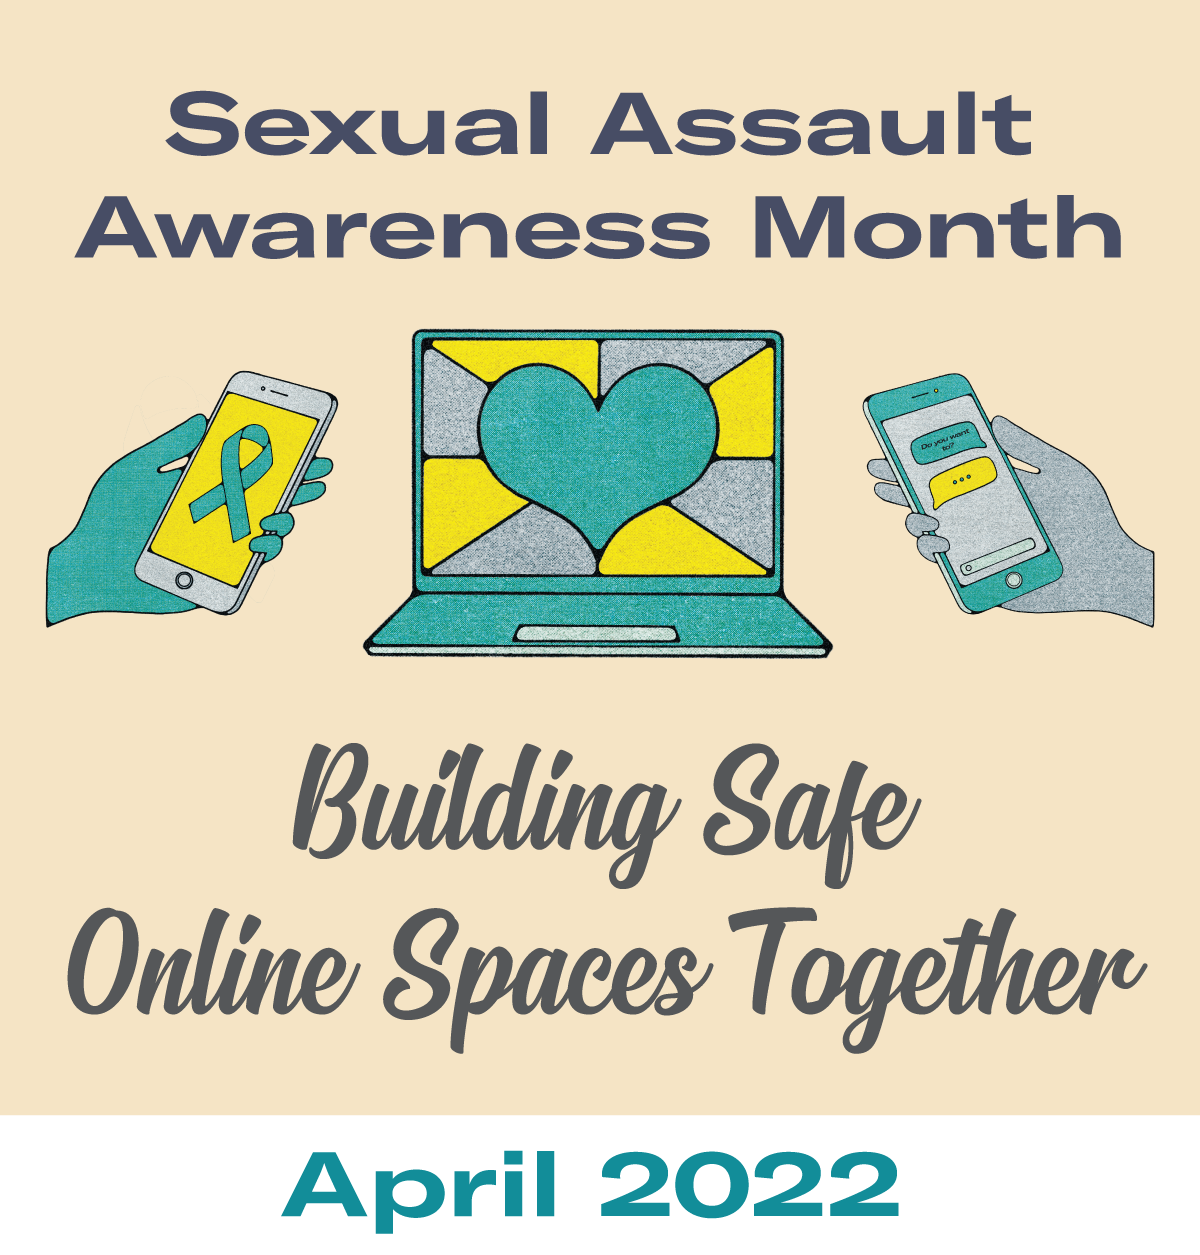 Building Safe Online Spaces Together